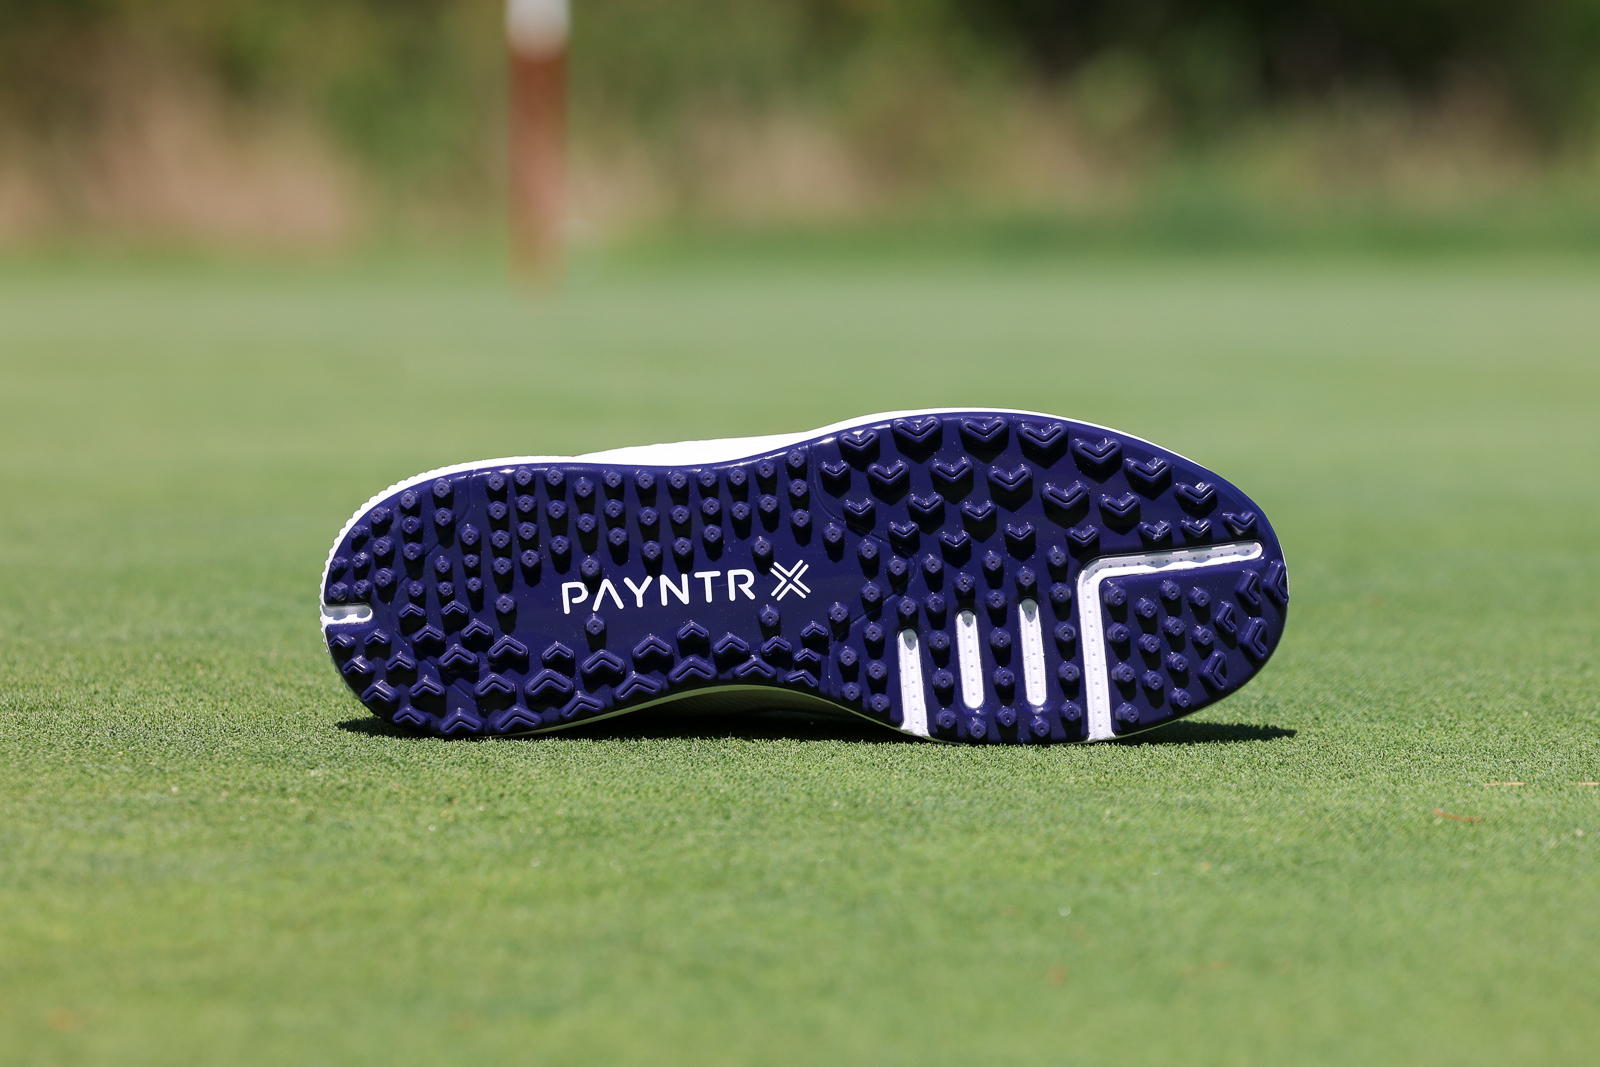 Payntr Golf X 003 Golf Shoes